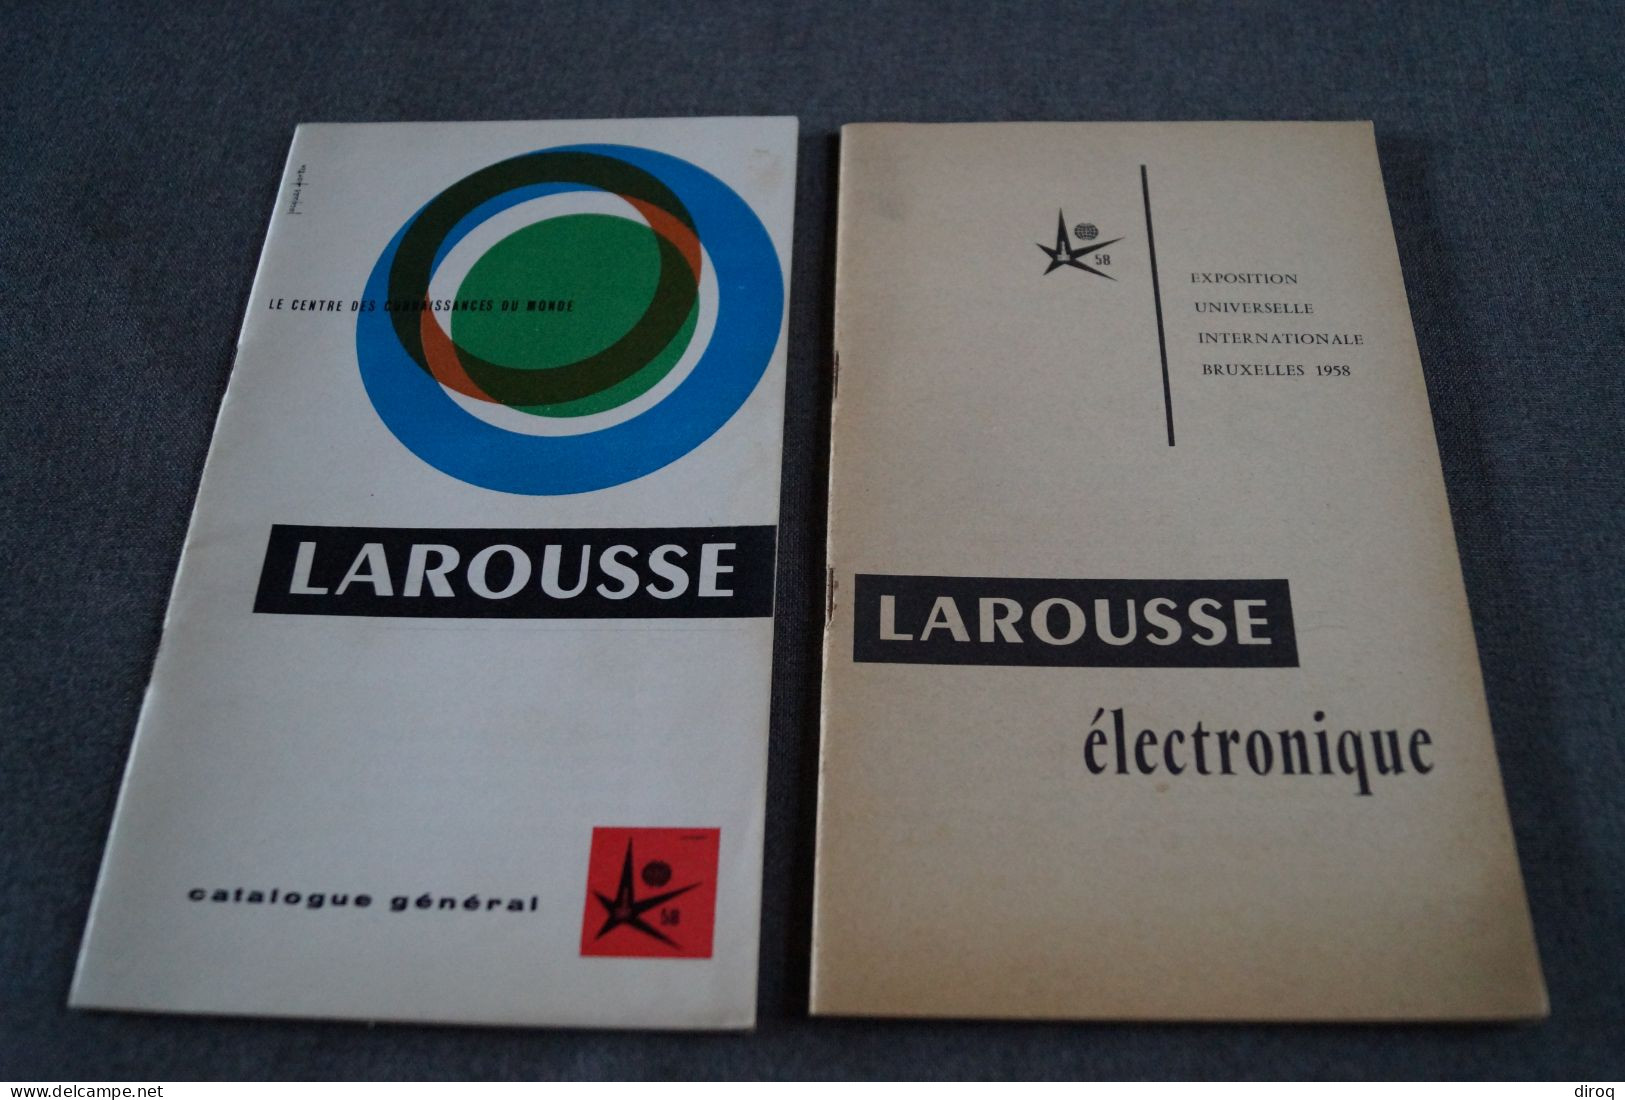 Expo 1958, Bruxelles,publicitaire,Larousse,2 Ouvrages,44 Page Et 34 Pages,20,5 Cm./12,5 Cm. - Pubblicitari